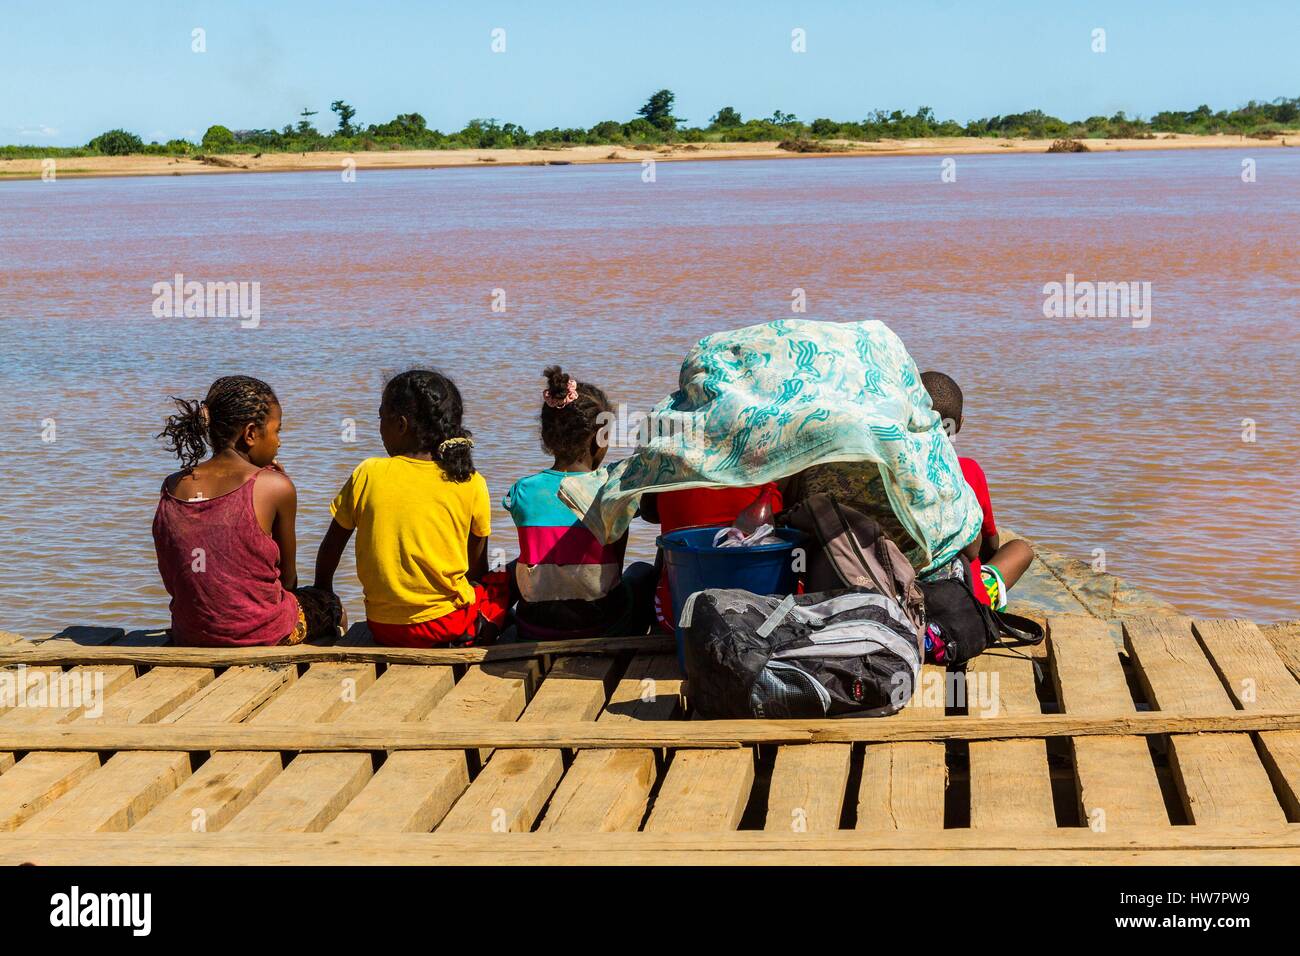 Madagascar, Menabe region of Belo sur Tsiribihina, child on a ferry Stock Photo